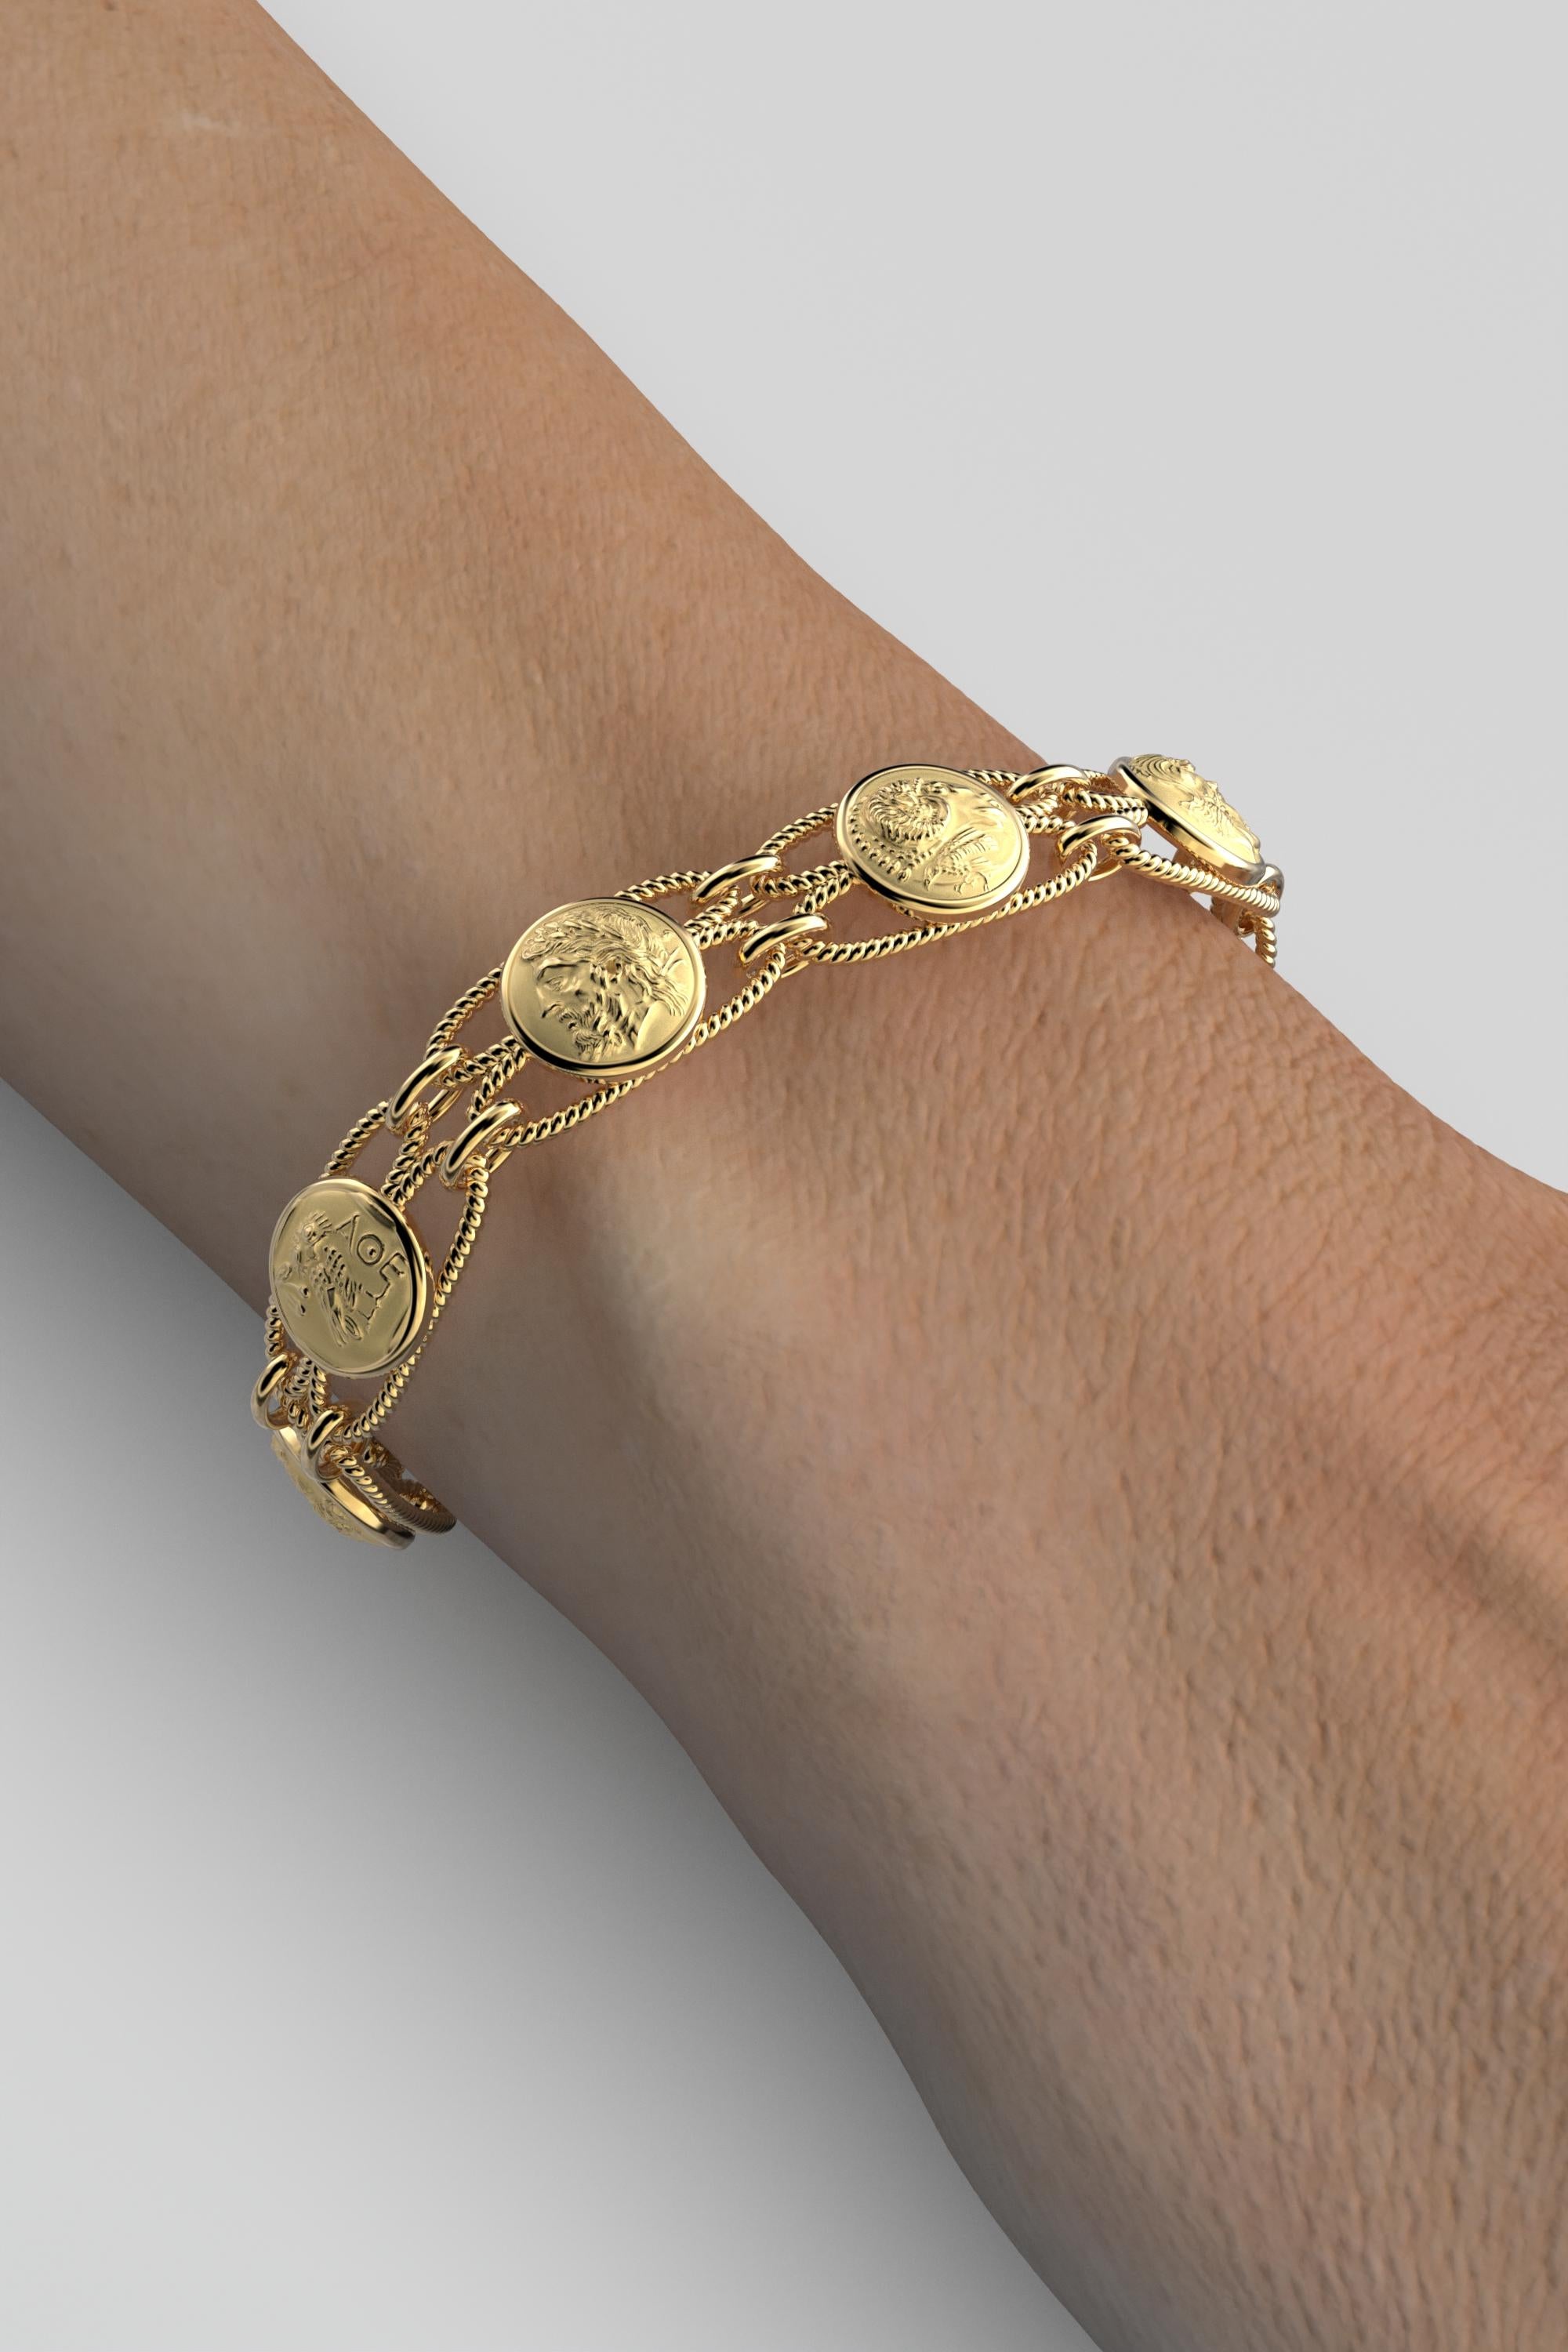 gold coin bracelet 18k